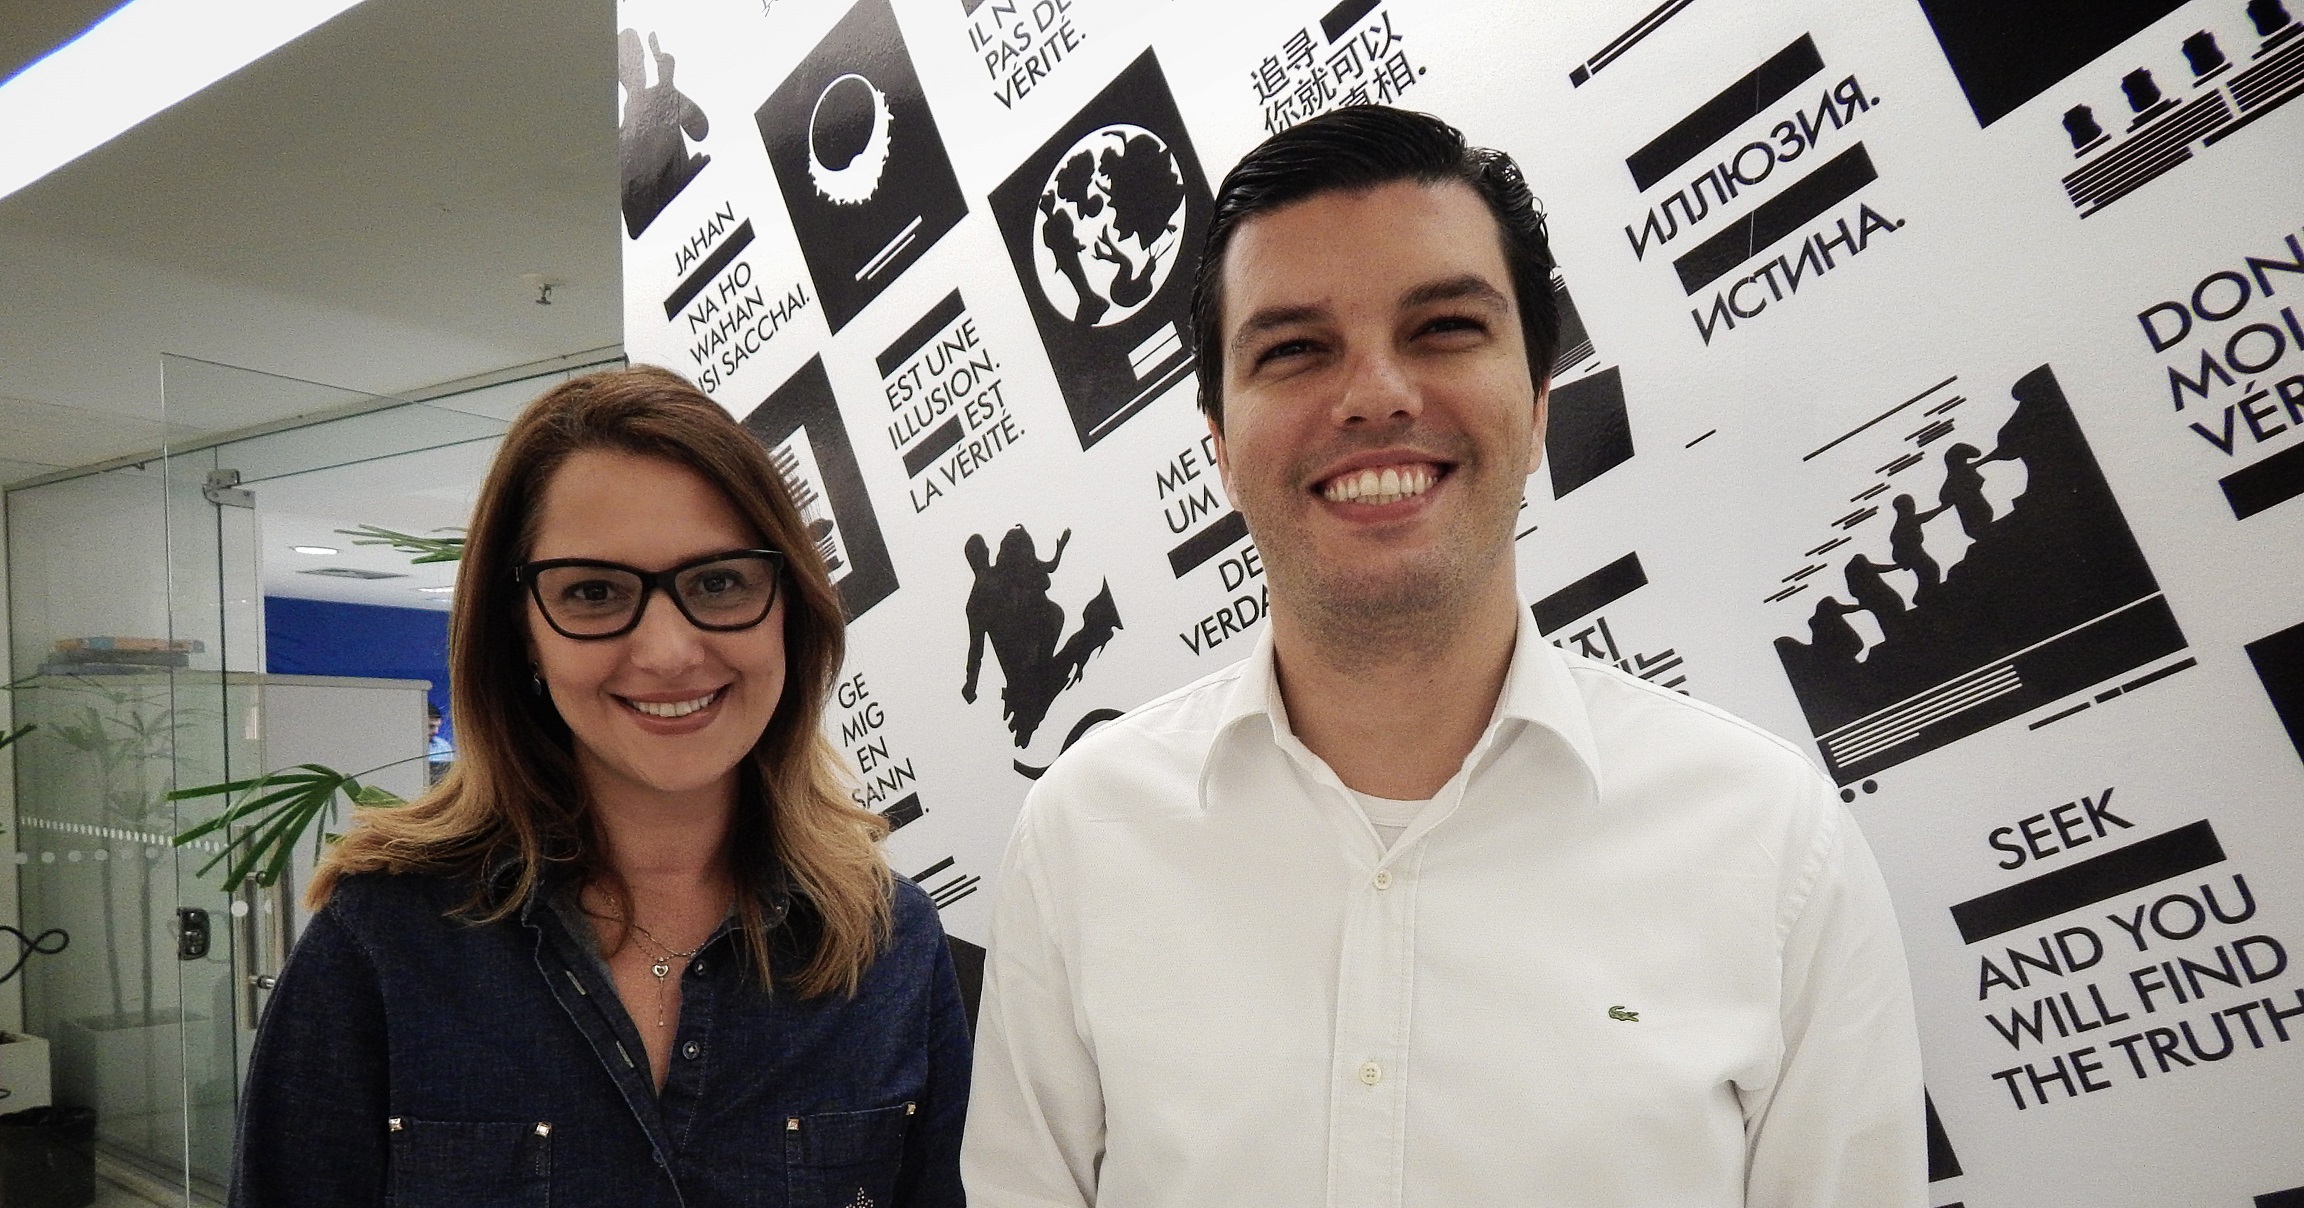 WMcCann reestrutura sua equipe de mídia no Rio de Janeiro